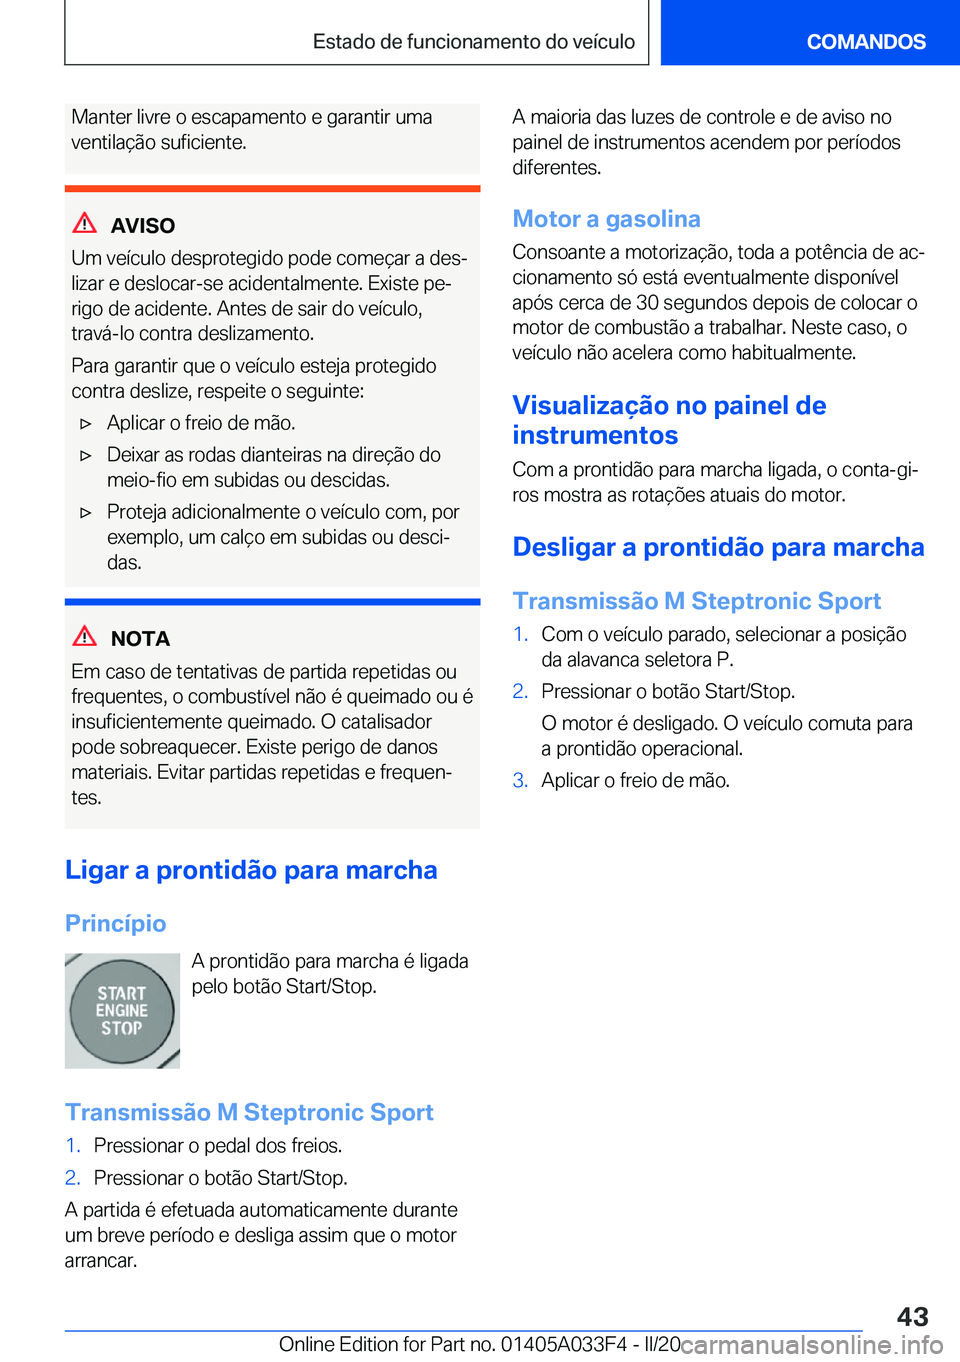 BMW X5 M 2020  Manual do condutor (in Portuguese) �M�a�n�t�e�r��l�i�v�r�e��o��e�s�c�a�p�a�m�e�n�t�o��e��g�a�r�a�n�t�i�r��u�m�a
�v�e�n�t�i�l�a�